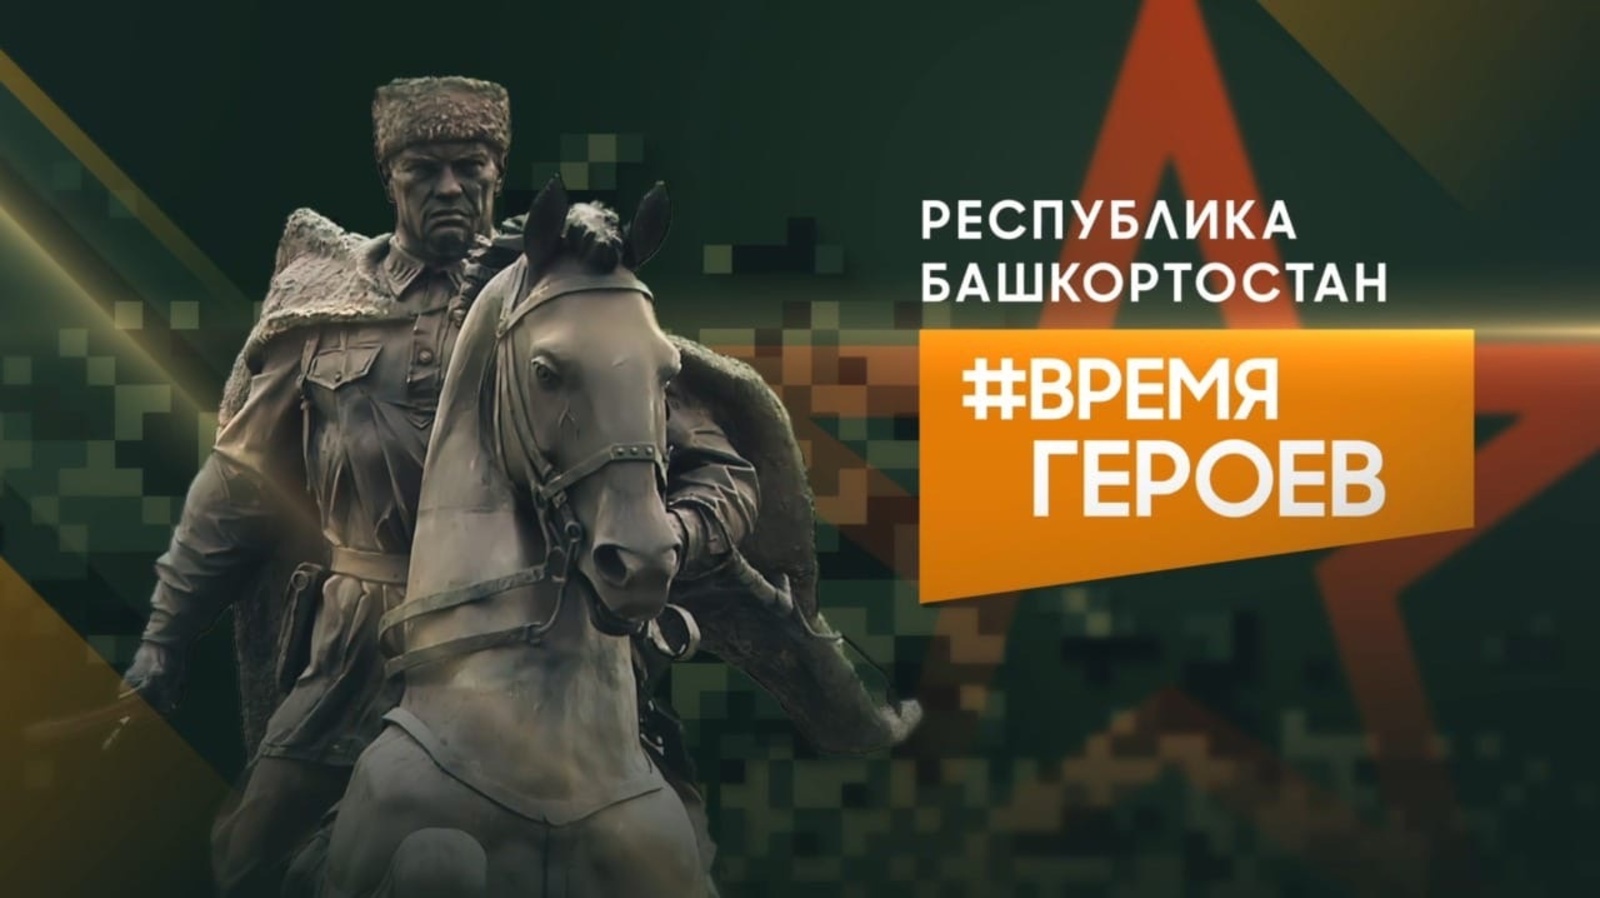 В Башкортостане запустили новый проект - “Время героев”